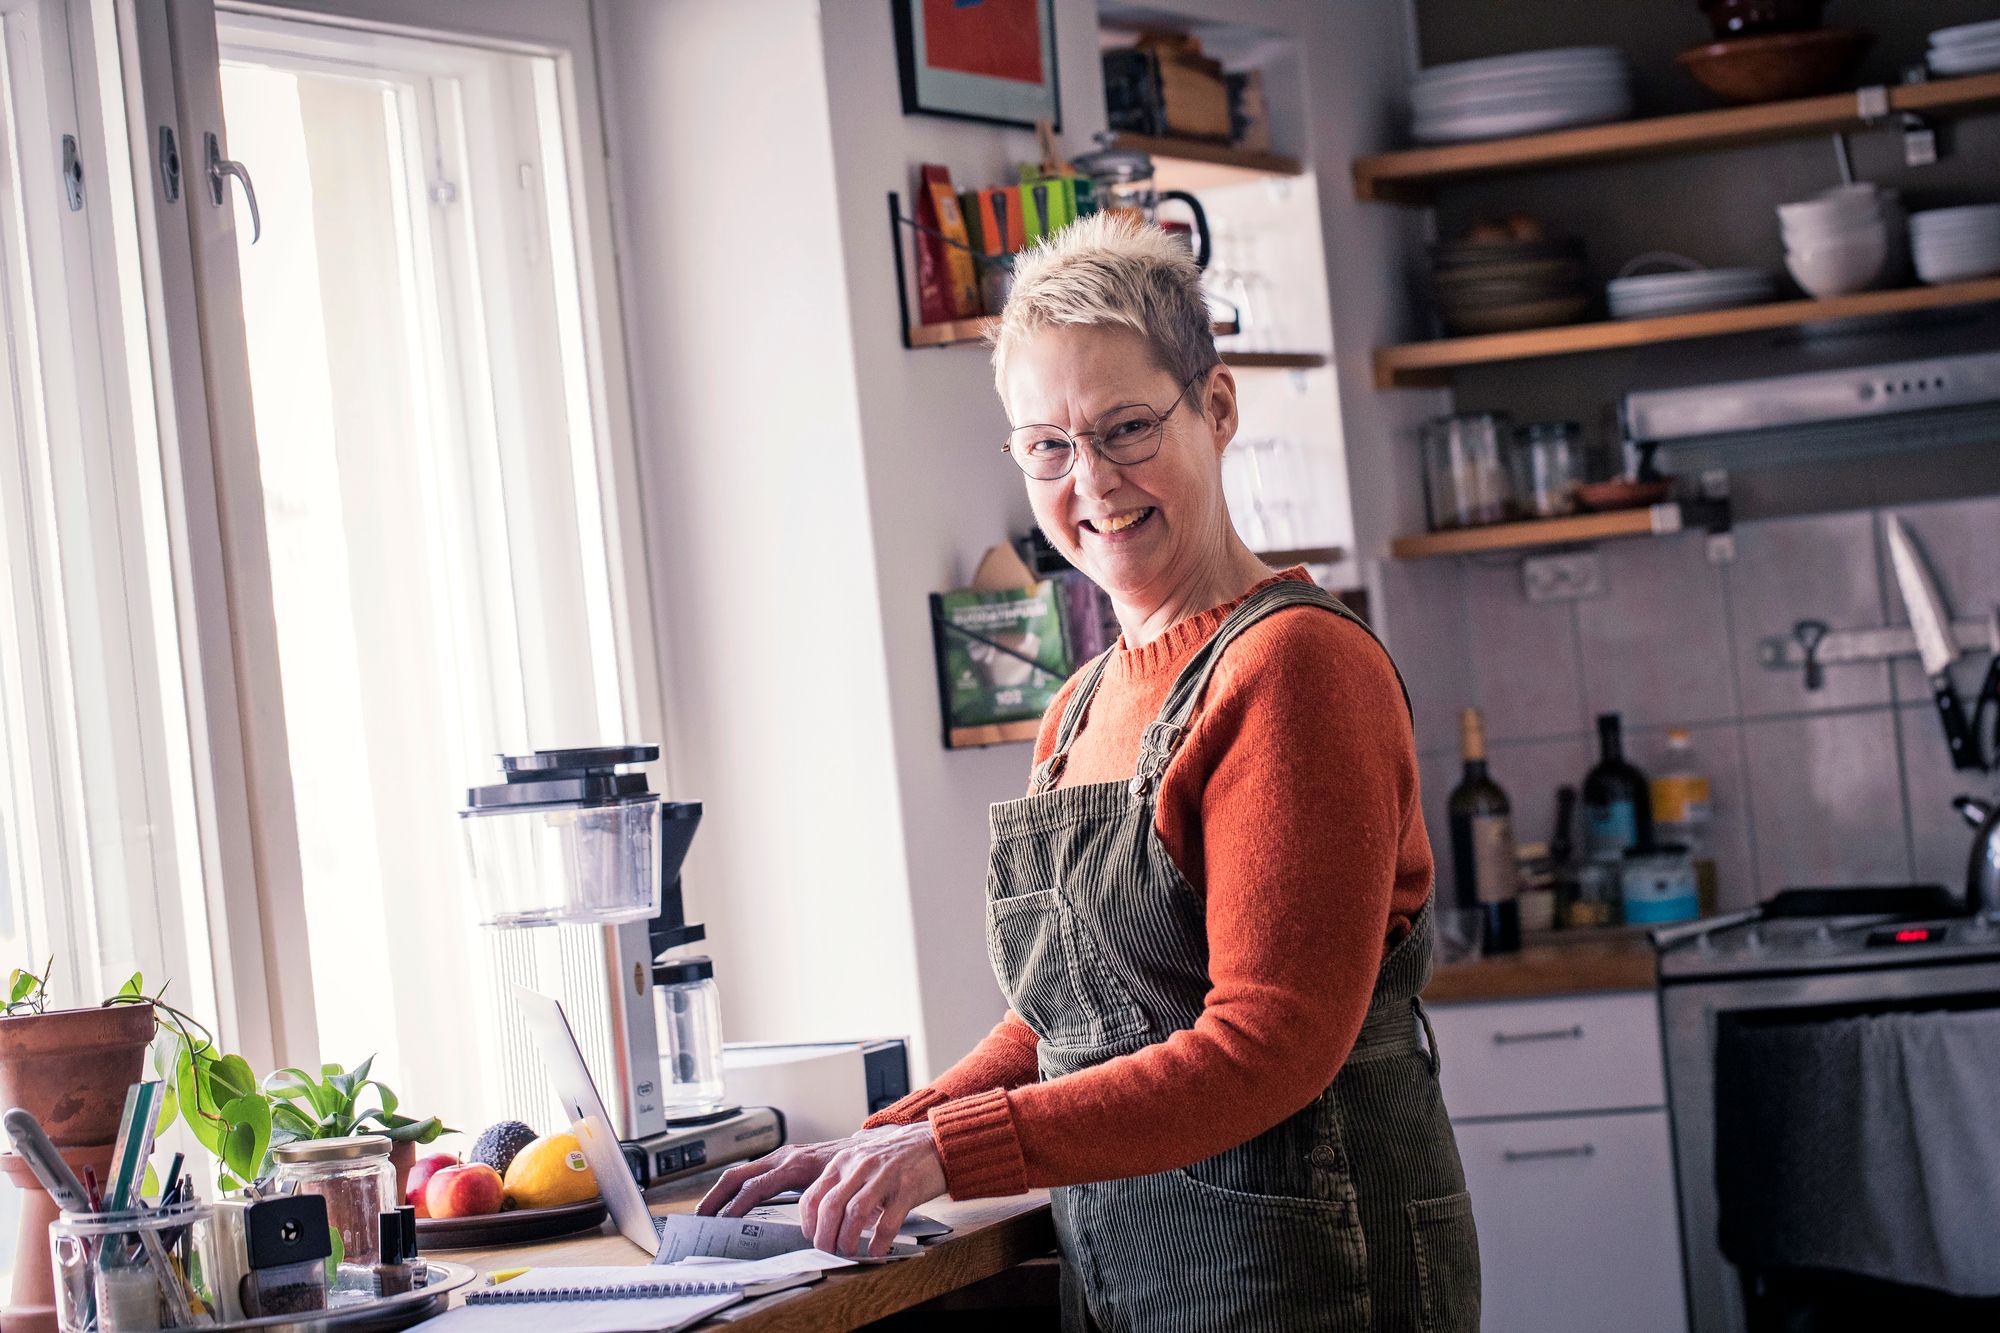 Ravintola-alalla työskentelevä Tiina Hestad on innokas kokkaaja. Hän noudattaa vegaanista ruokavaliota ja valmistaa ateriansa hyvistä raaka-aineista. Kuva: Jonne Räsänen